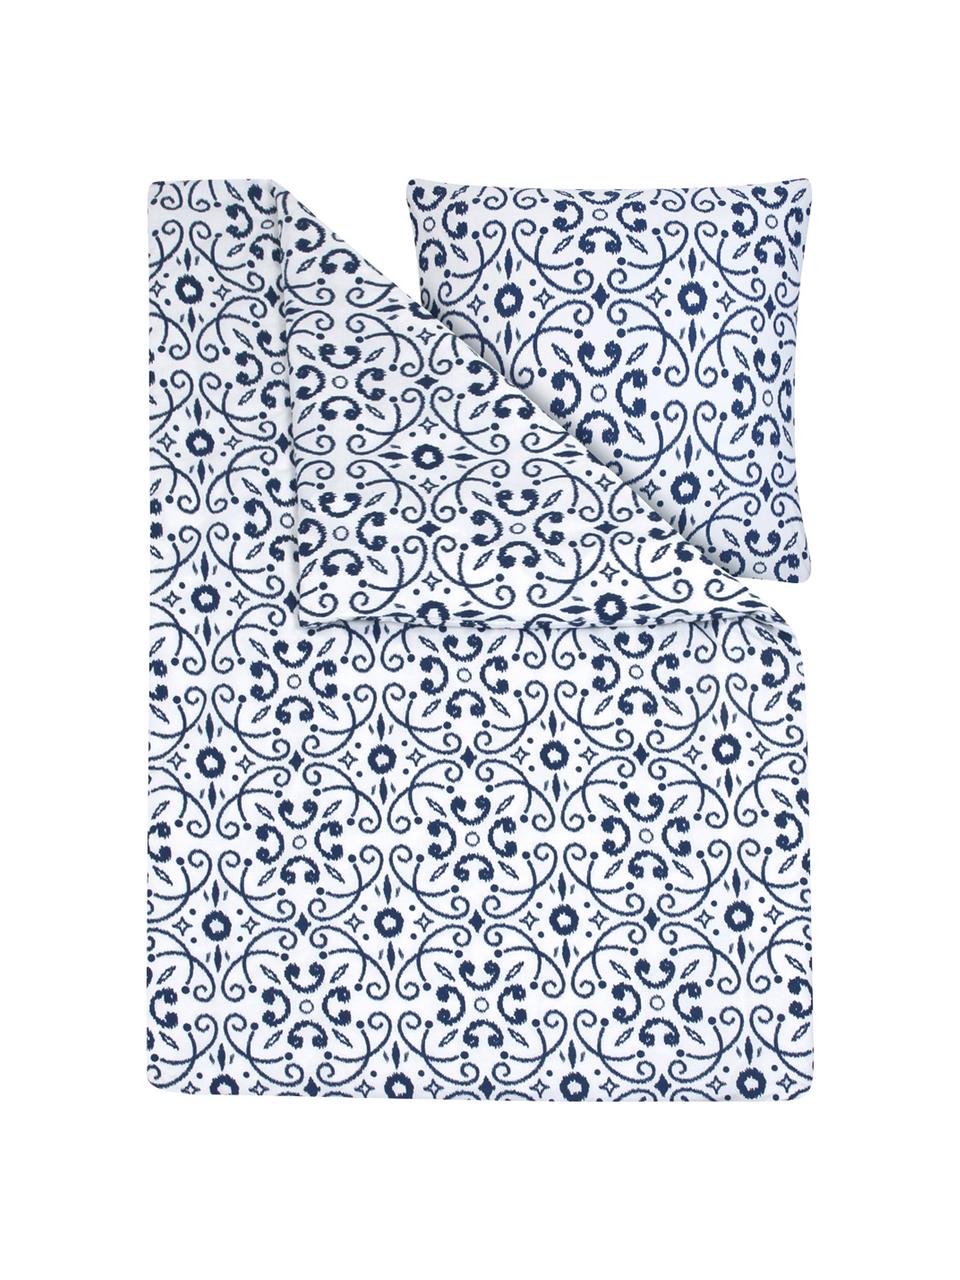 Bavlnená posteľná bielizeň Ashley, modrá/biela, Biela, modrá, 135 x 200 cm + 1 vankúš 80 x 80 cm